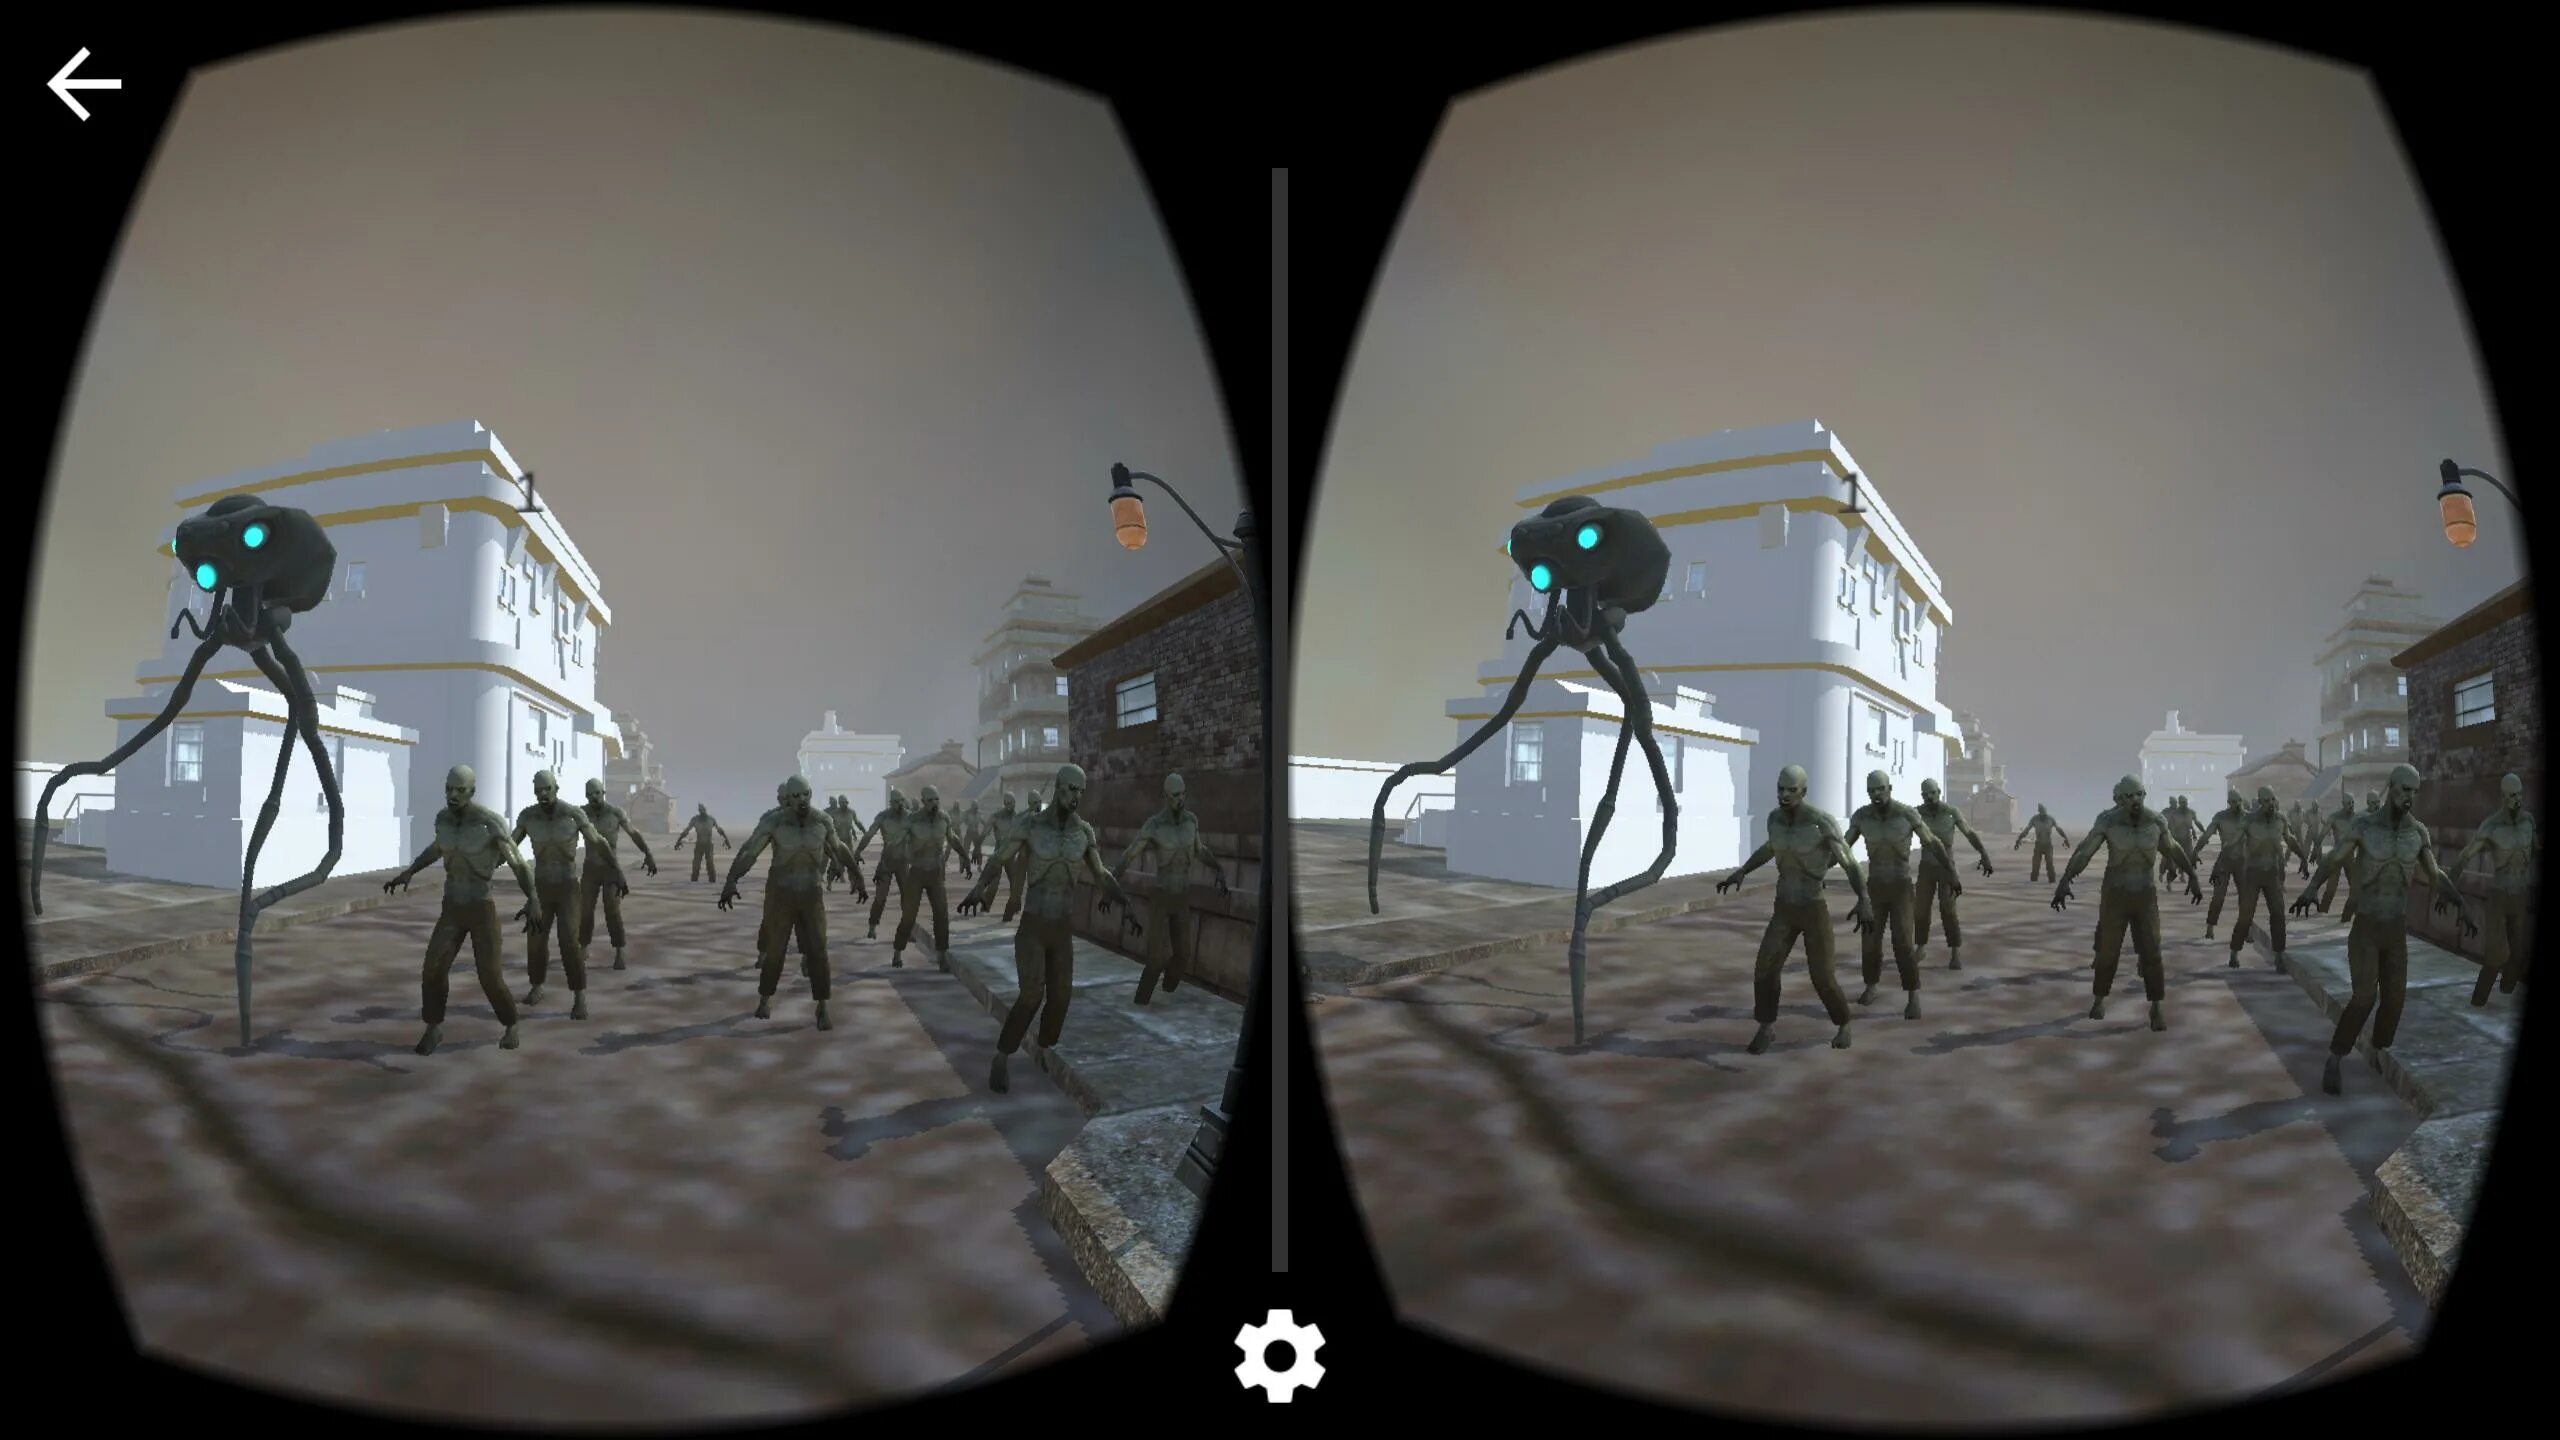 ВР игра про зомби в пустыне. VR игра про зомби кооператив. Зомби в тумане 2 концовка. Vr игра зомби